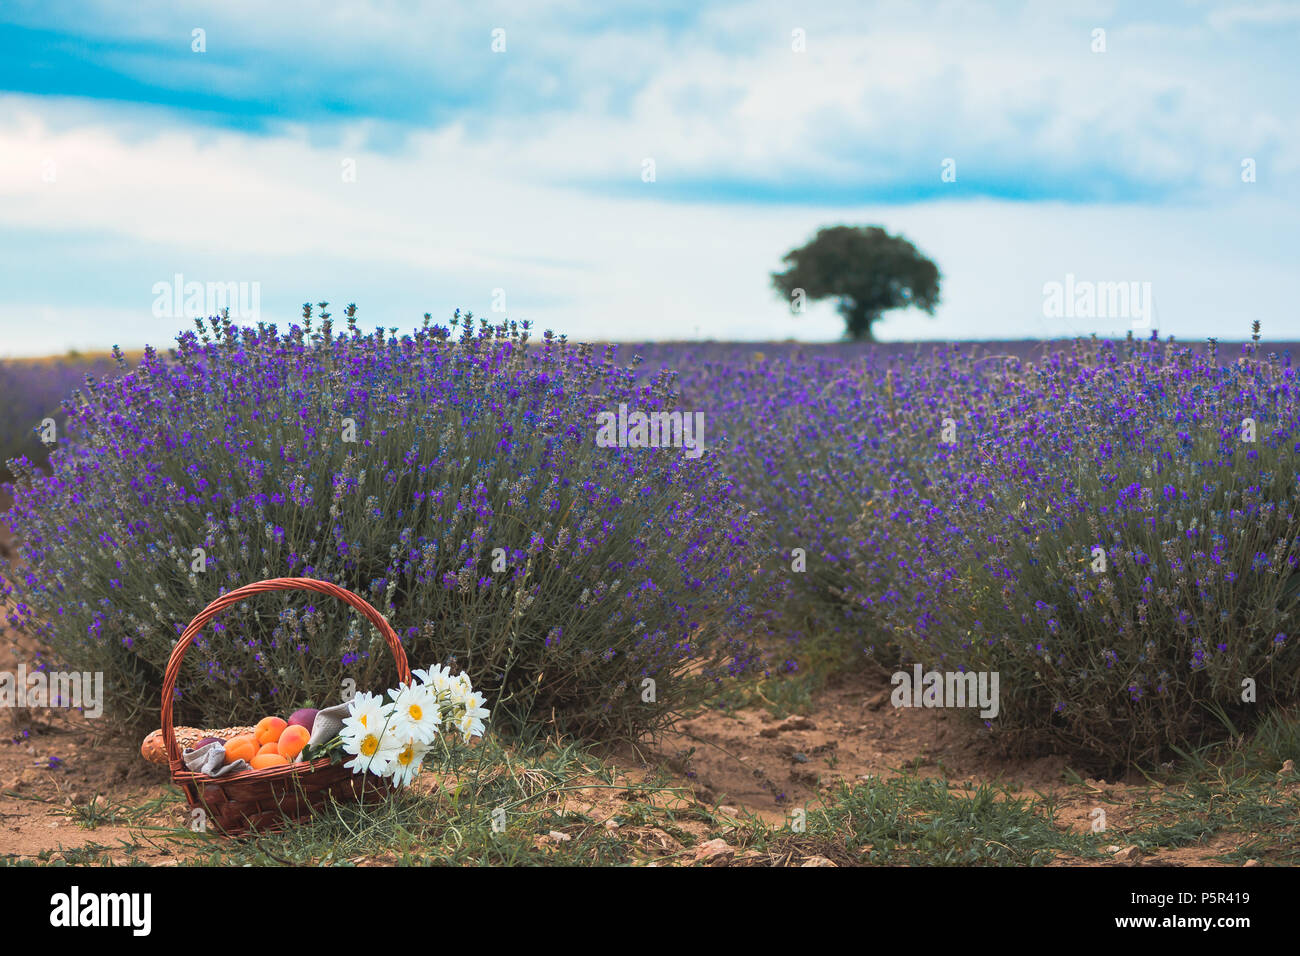 Bel cesto con le pesche, i fiori di camomilla e baguette francesi con un cappello di paglia sulla sommità in una straordinaria fioritura di campo di lavanda in Pazardzhik Foto Stock